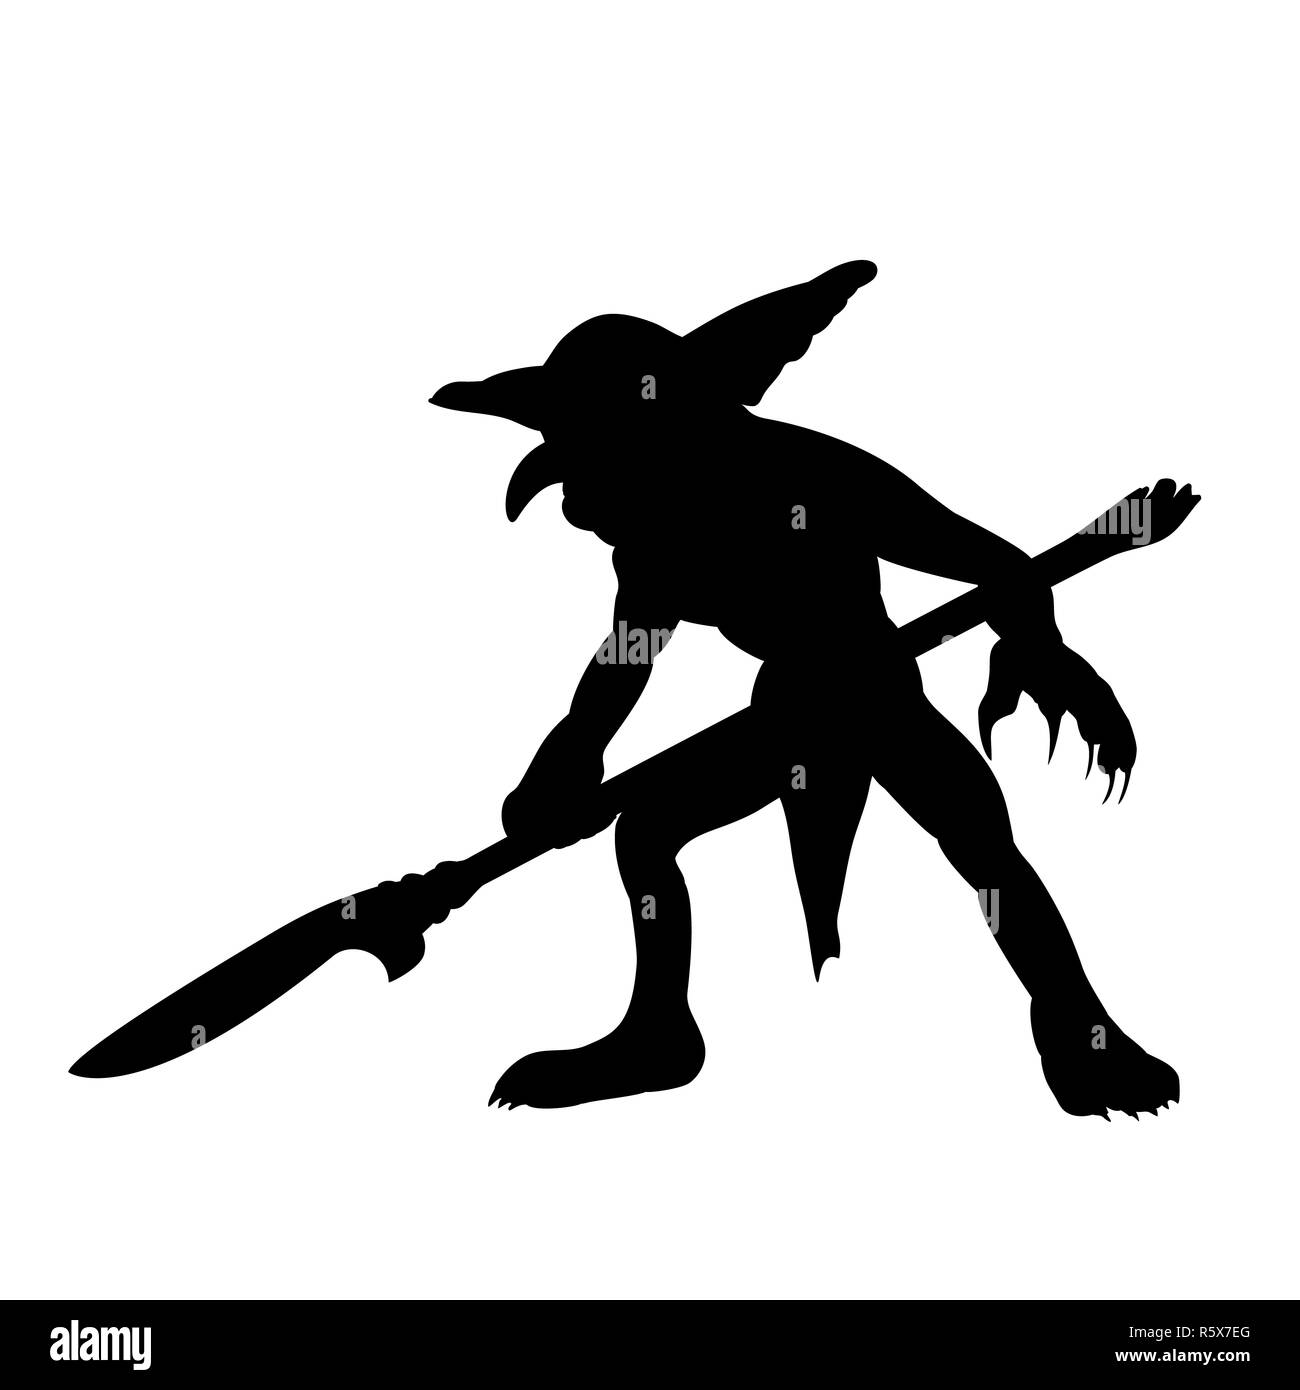 Goblin silhouette monster villain fantasy Stock Photo